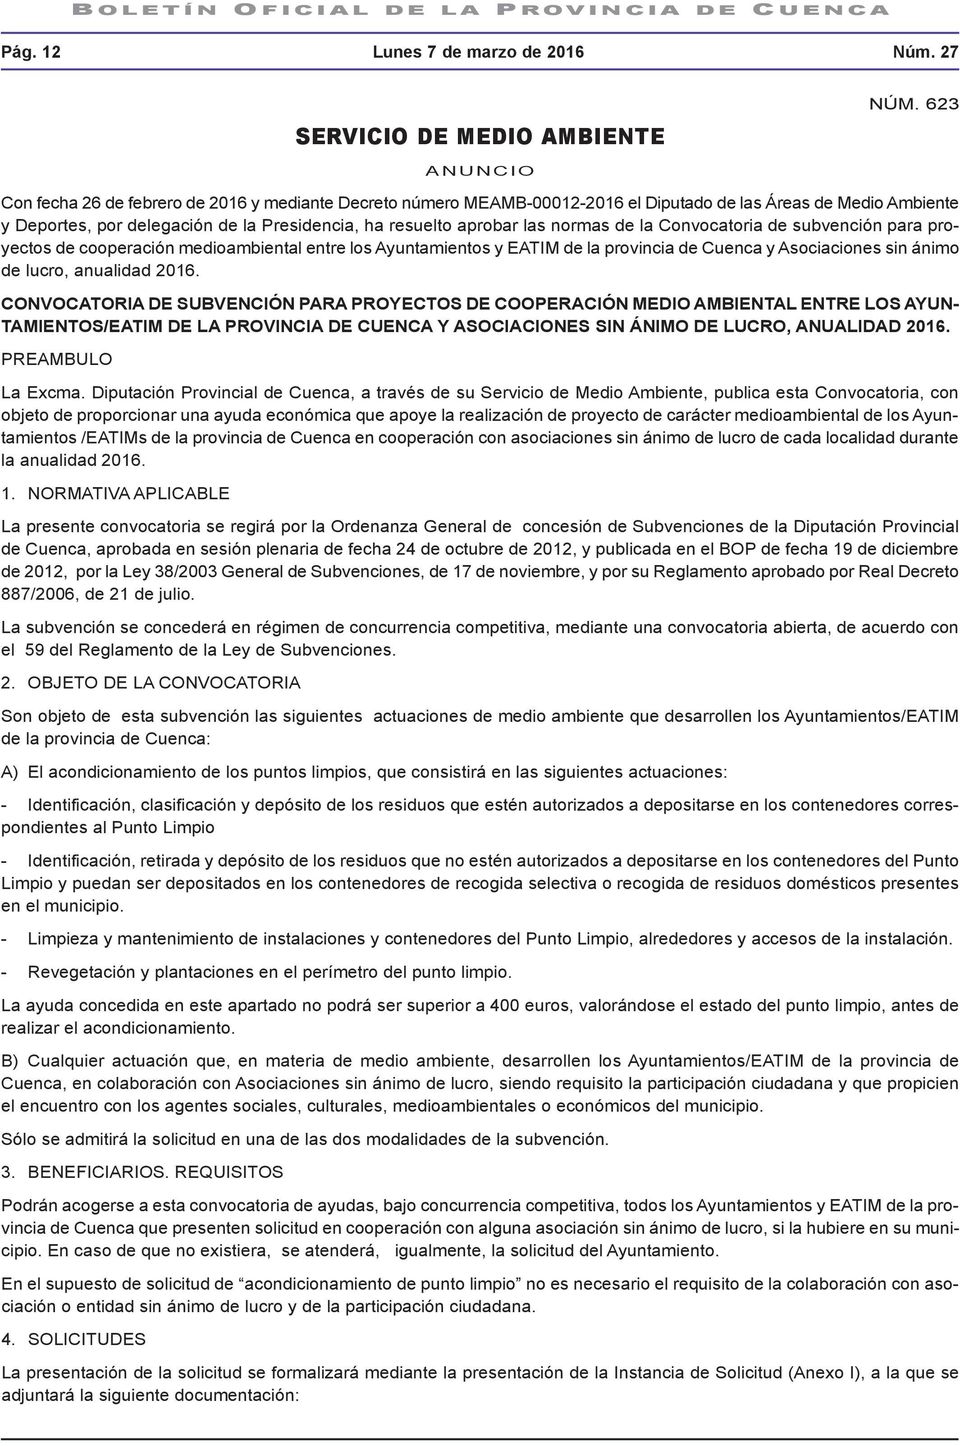 normas de la Convocatoria de subvención para proyectos de cooperación medioambiental entre los Ayuntamientos y EATIM de la provincia de Cuenca y Asociaciones sin ánimo de lucro, anualidad 2016.